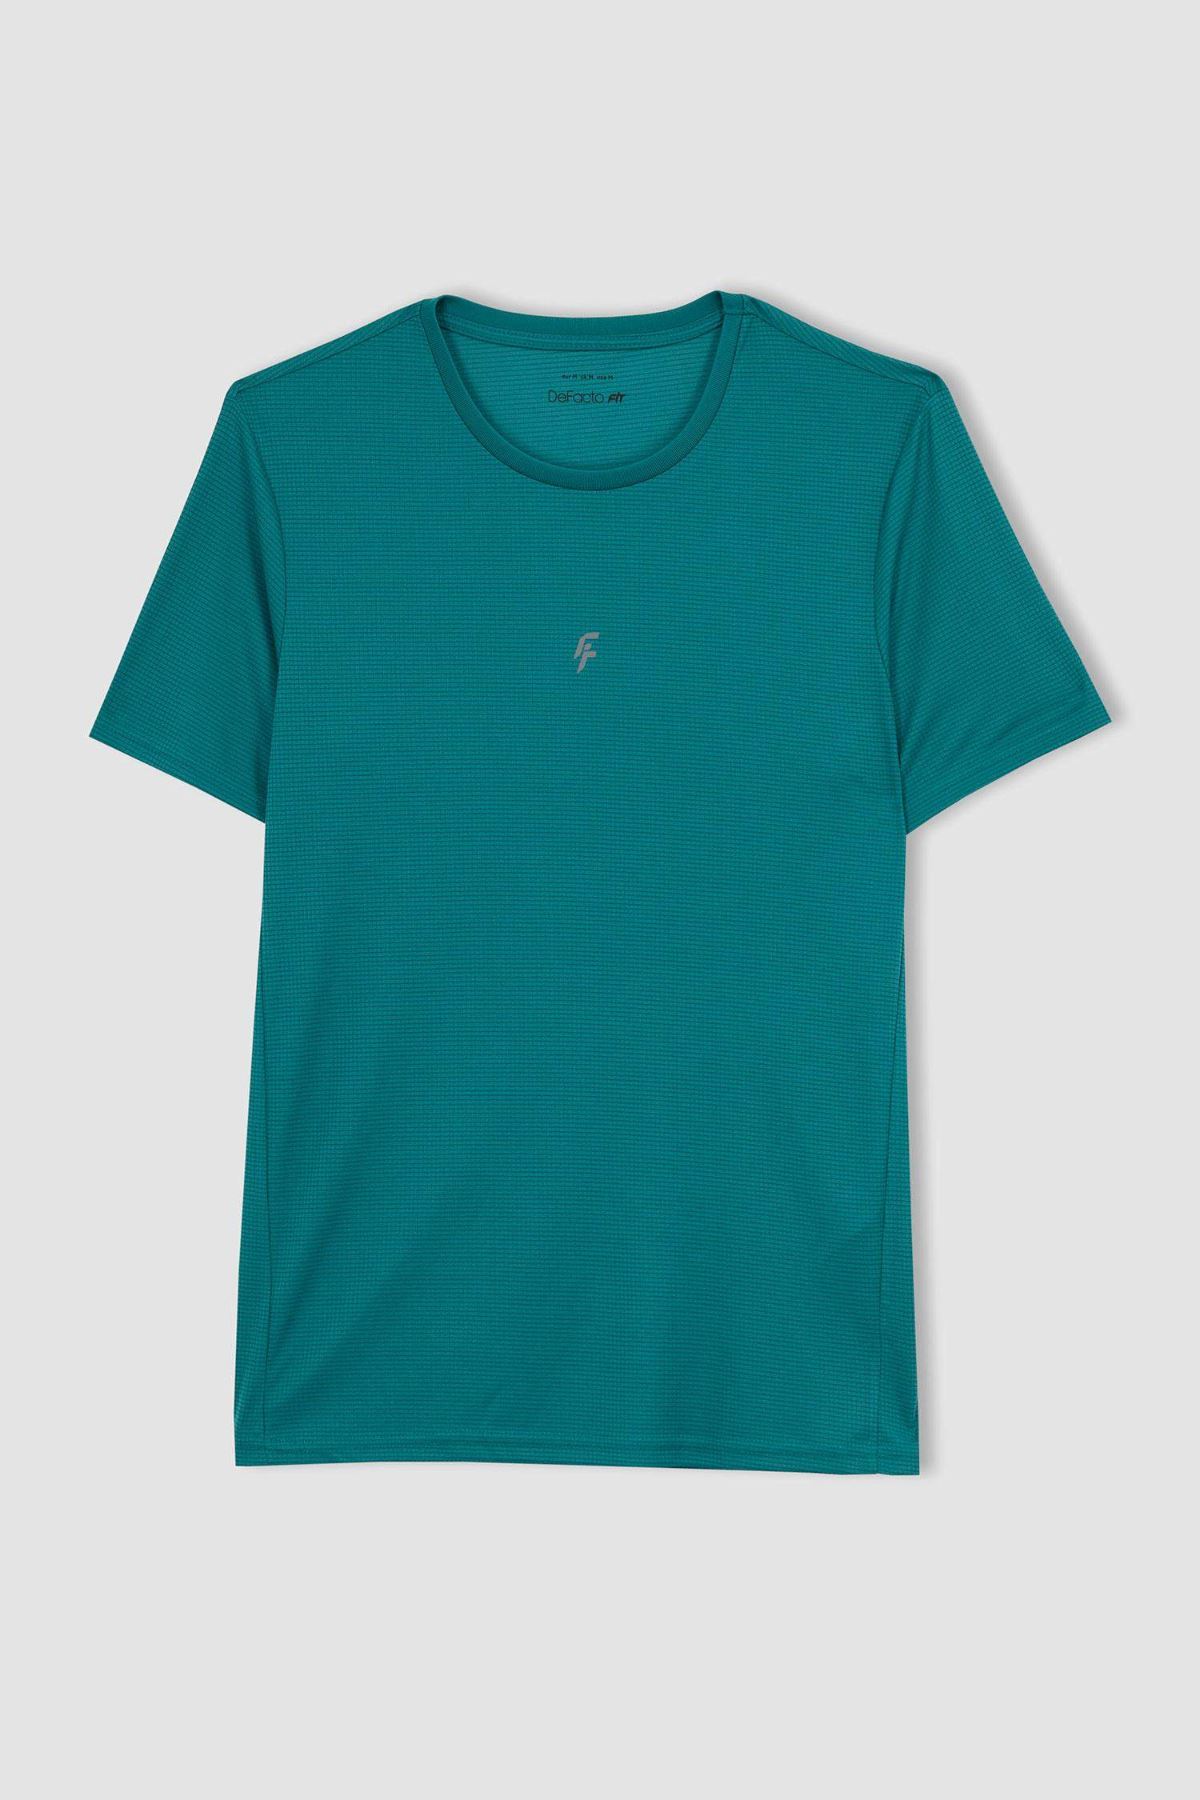 Defacto Erkek Yeşil Tişört - X6142AZ/GN450